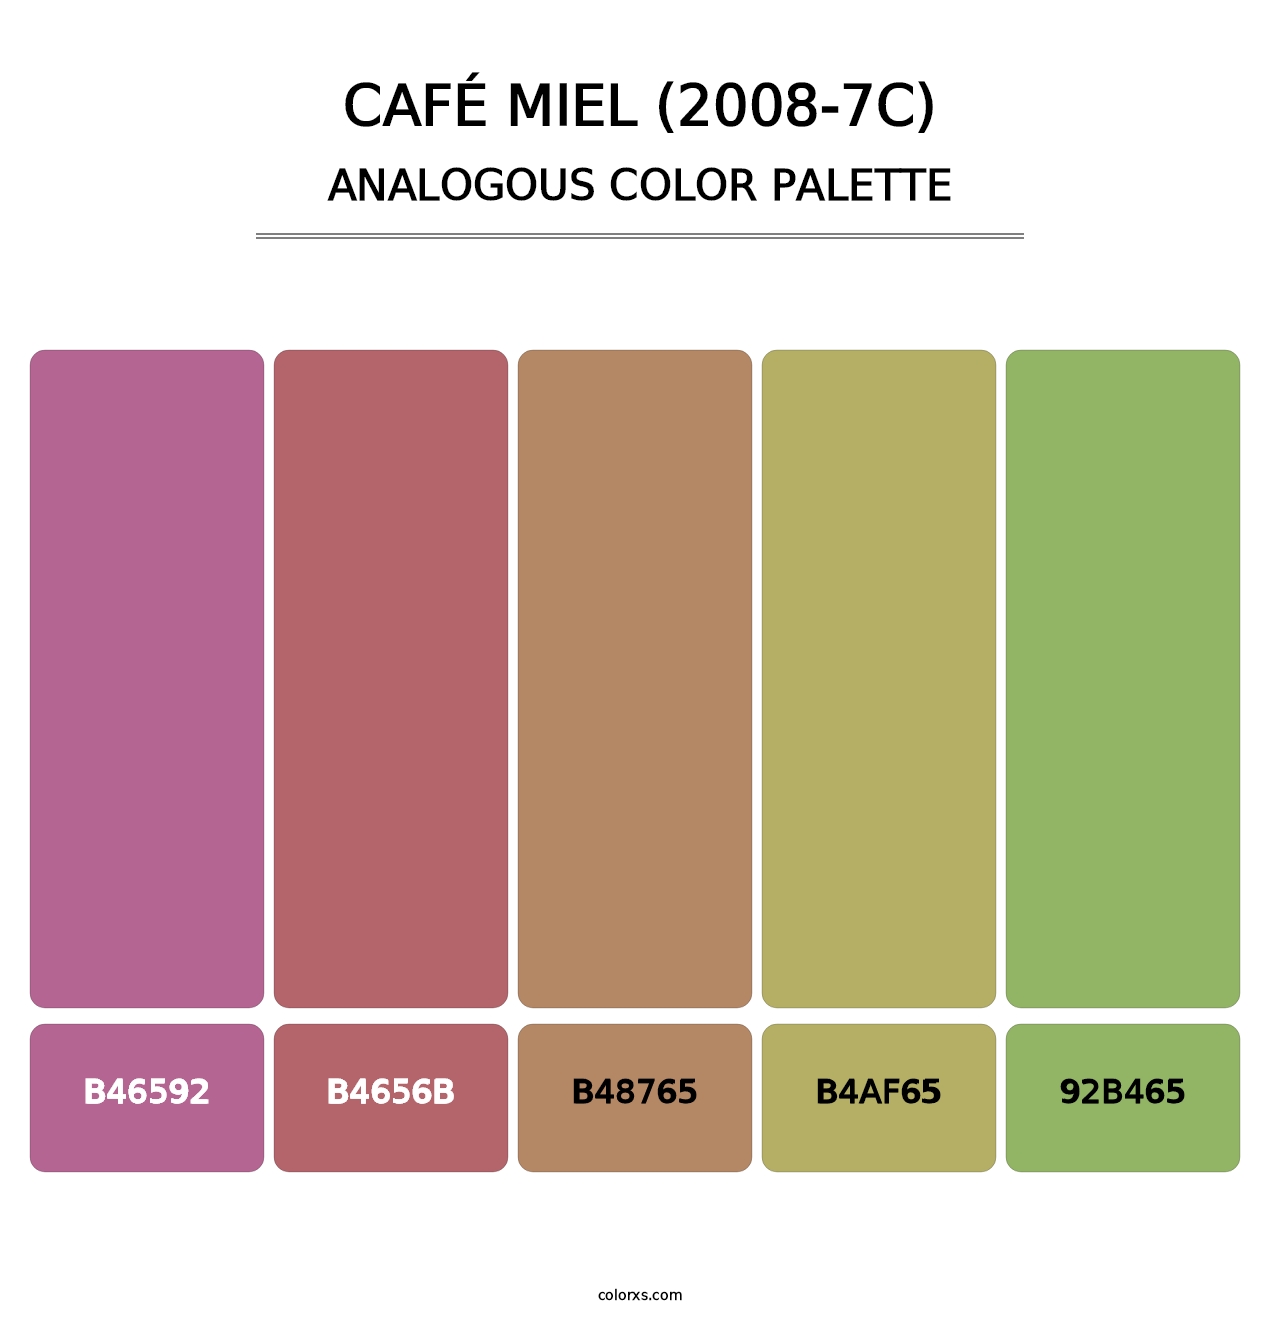 Café Miel (2008-7C) - Analogous Color Palette